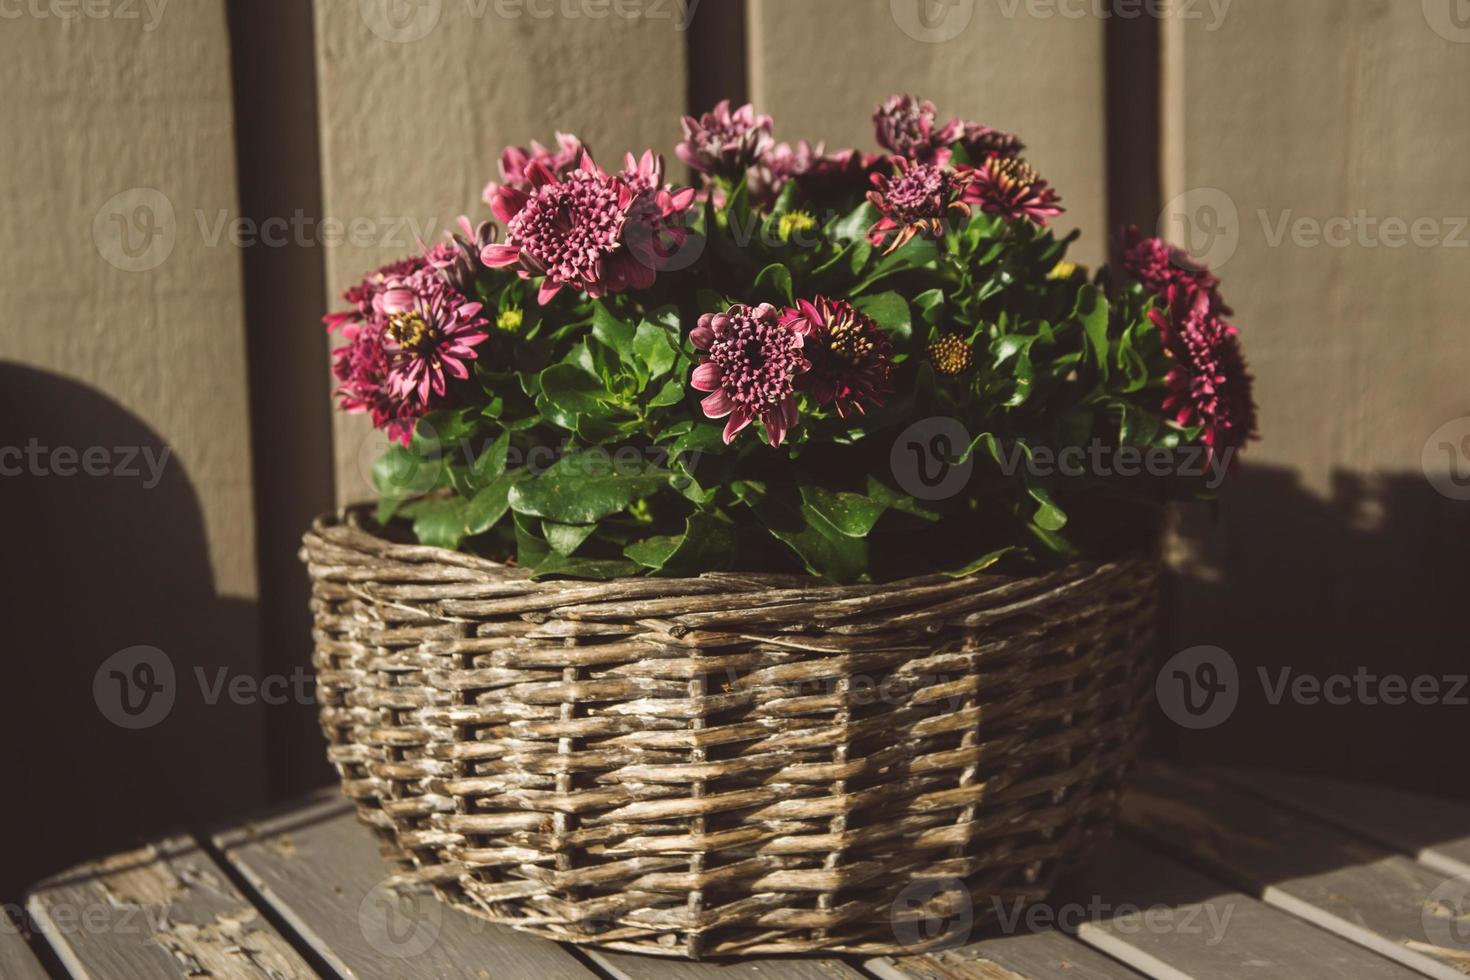 fleurs violettes dans un panier rond en osier sur une table en bois photo